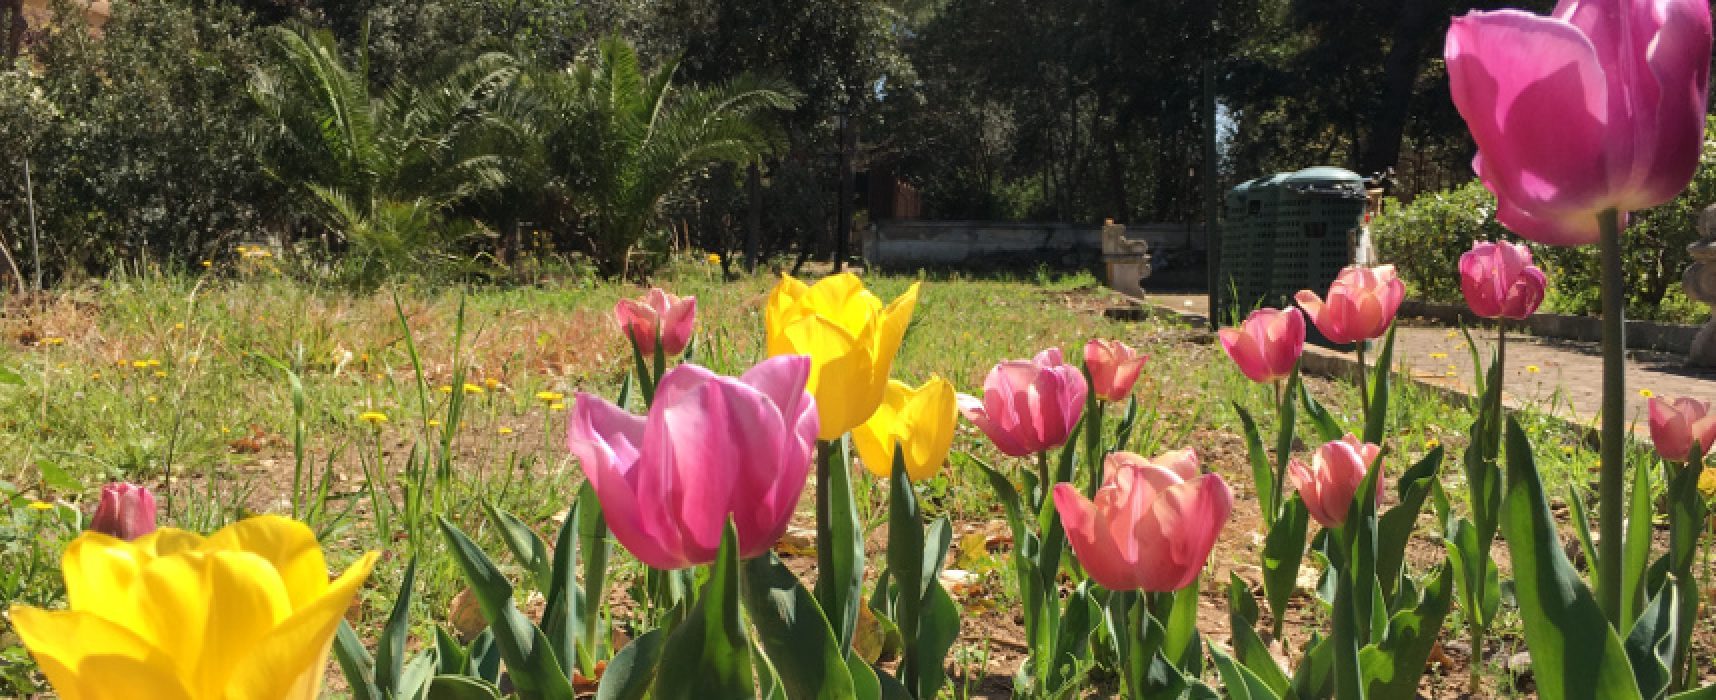 L’orto botanico apre i battenti per il progetto “Appuntamento in giardino”